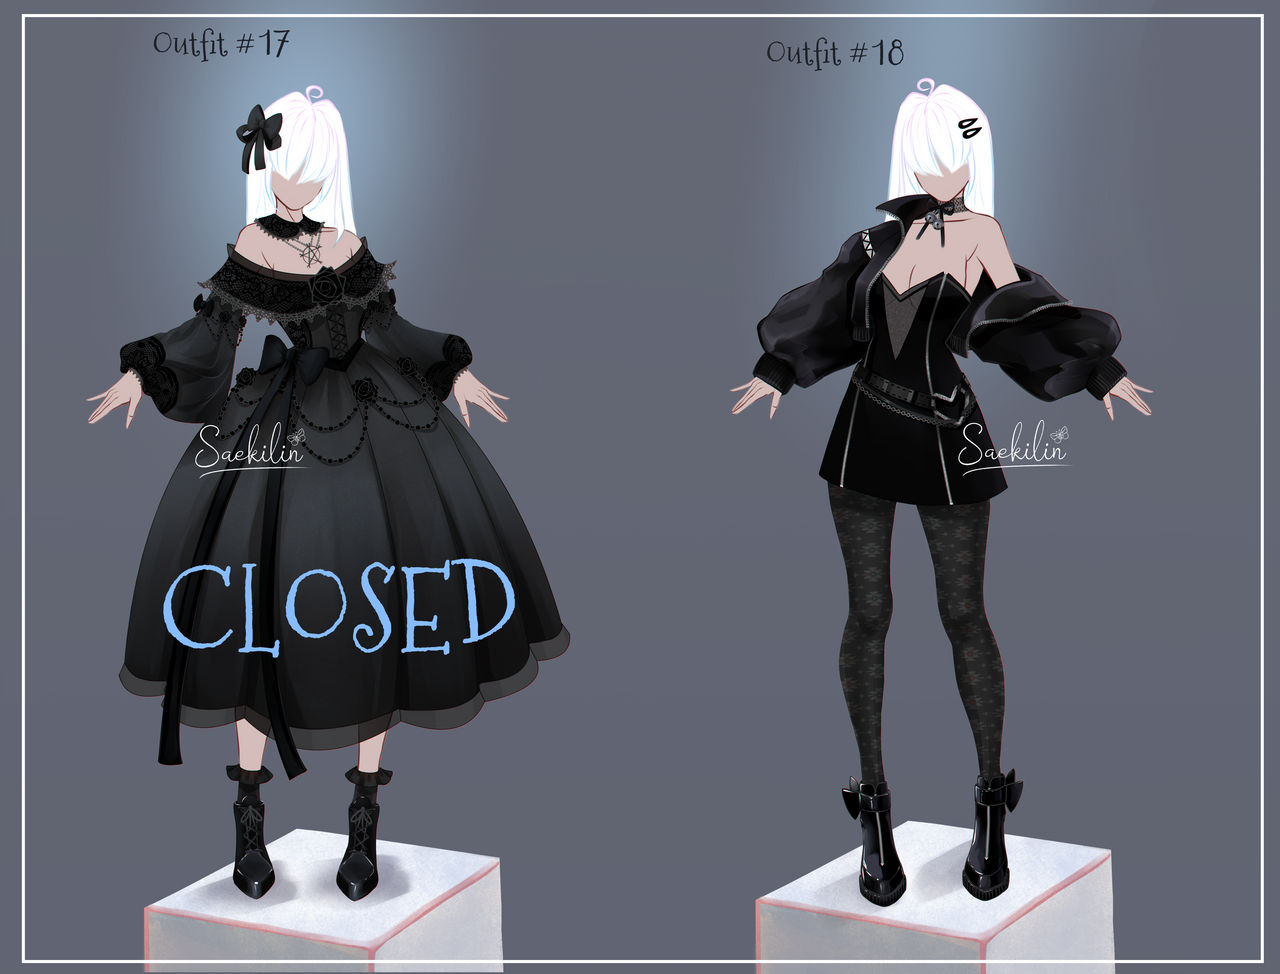 CLOSED] Kain's Art  Professional Uniform Designer / Concept